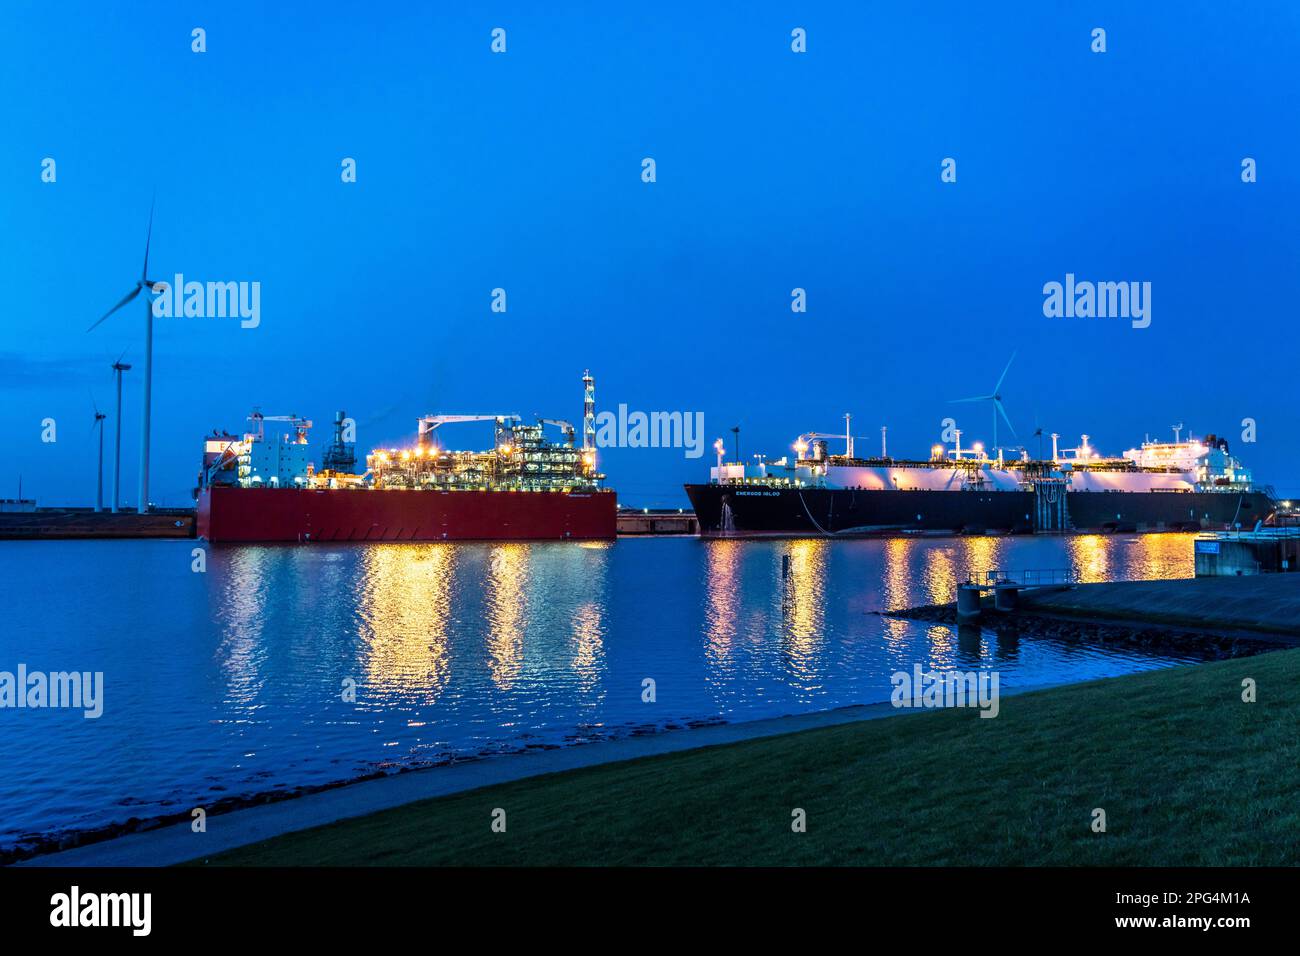 EemsEnergyTerminal, terminale galleggiante di GNL nel porto marittimo di Eemshaven, le petroliere portano gas naturale liquefatto alle due navi di produzione, il GNL di Eemshaven Foto Stock